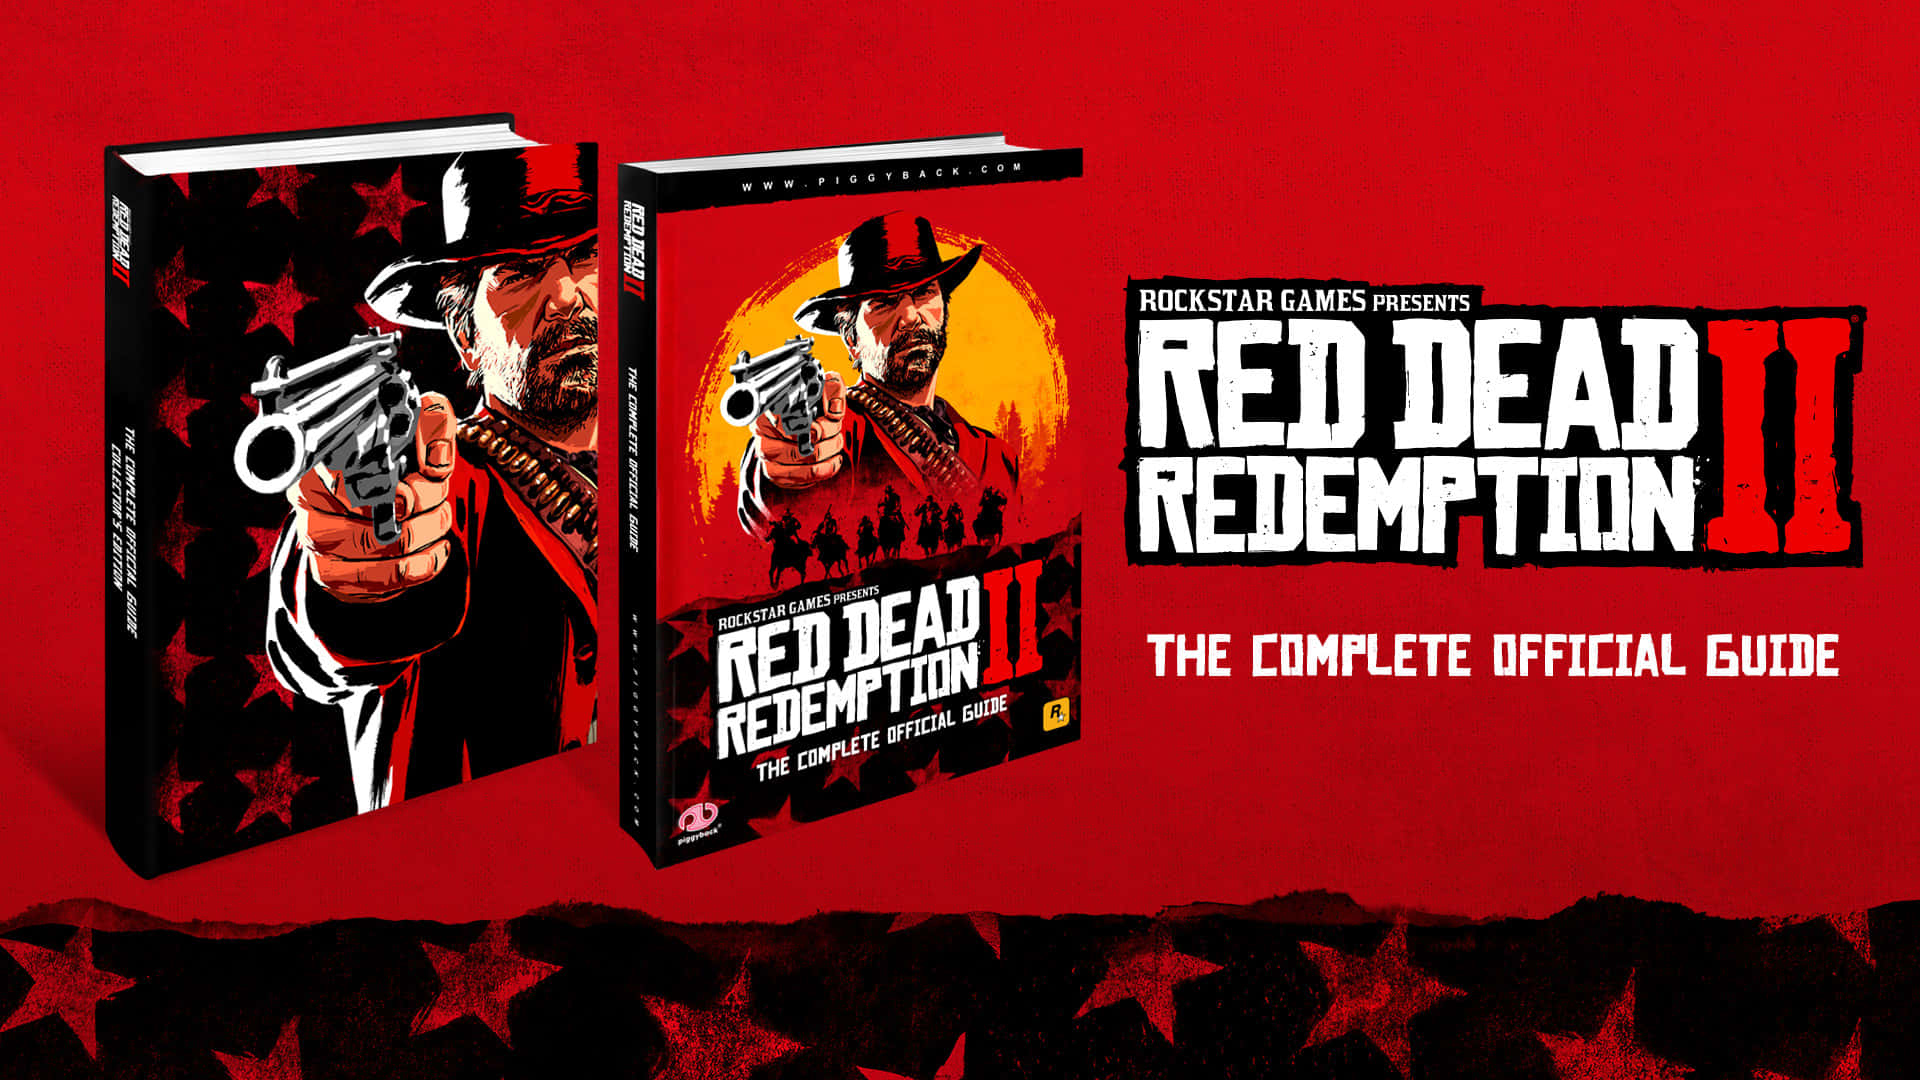 Manuellaffischmall 1920x1080 Red Dead Redemption 2 Bakgrund.